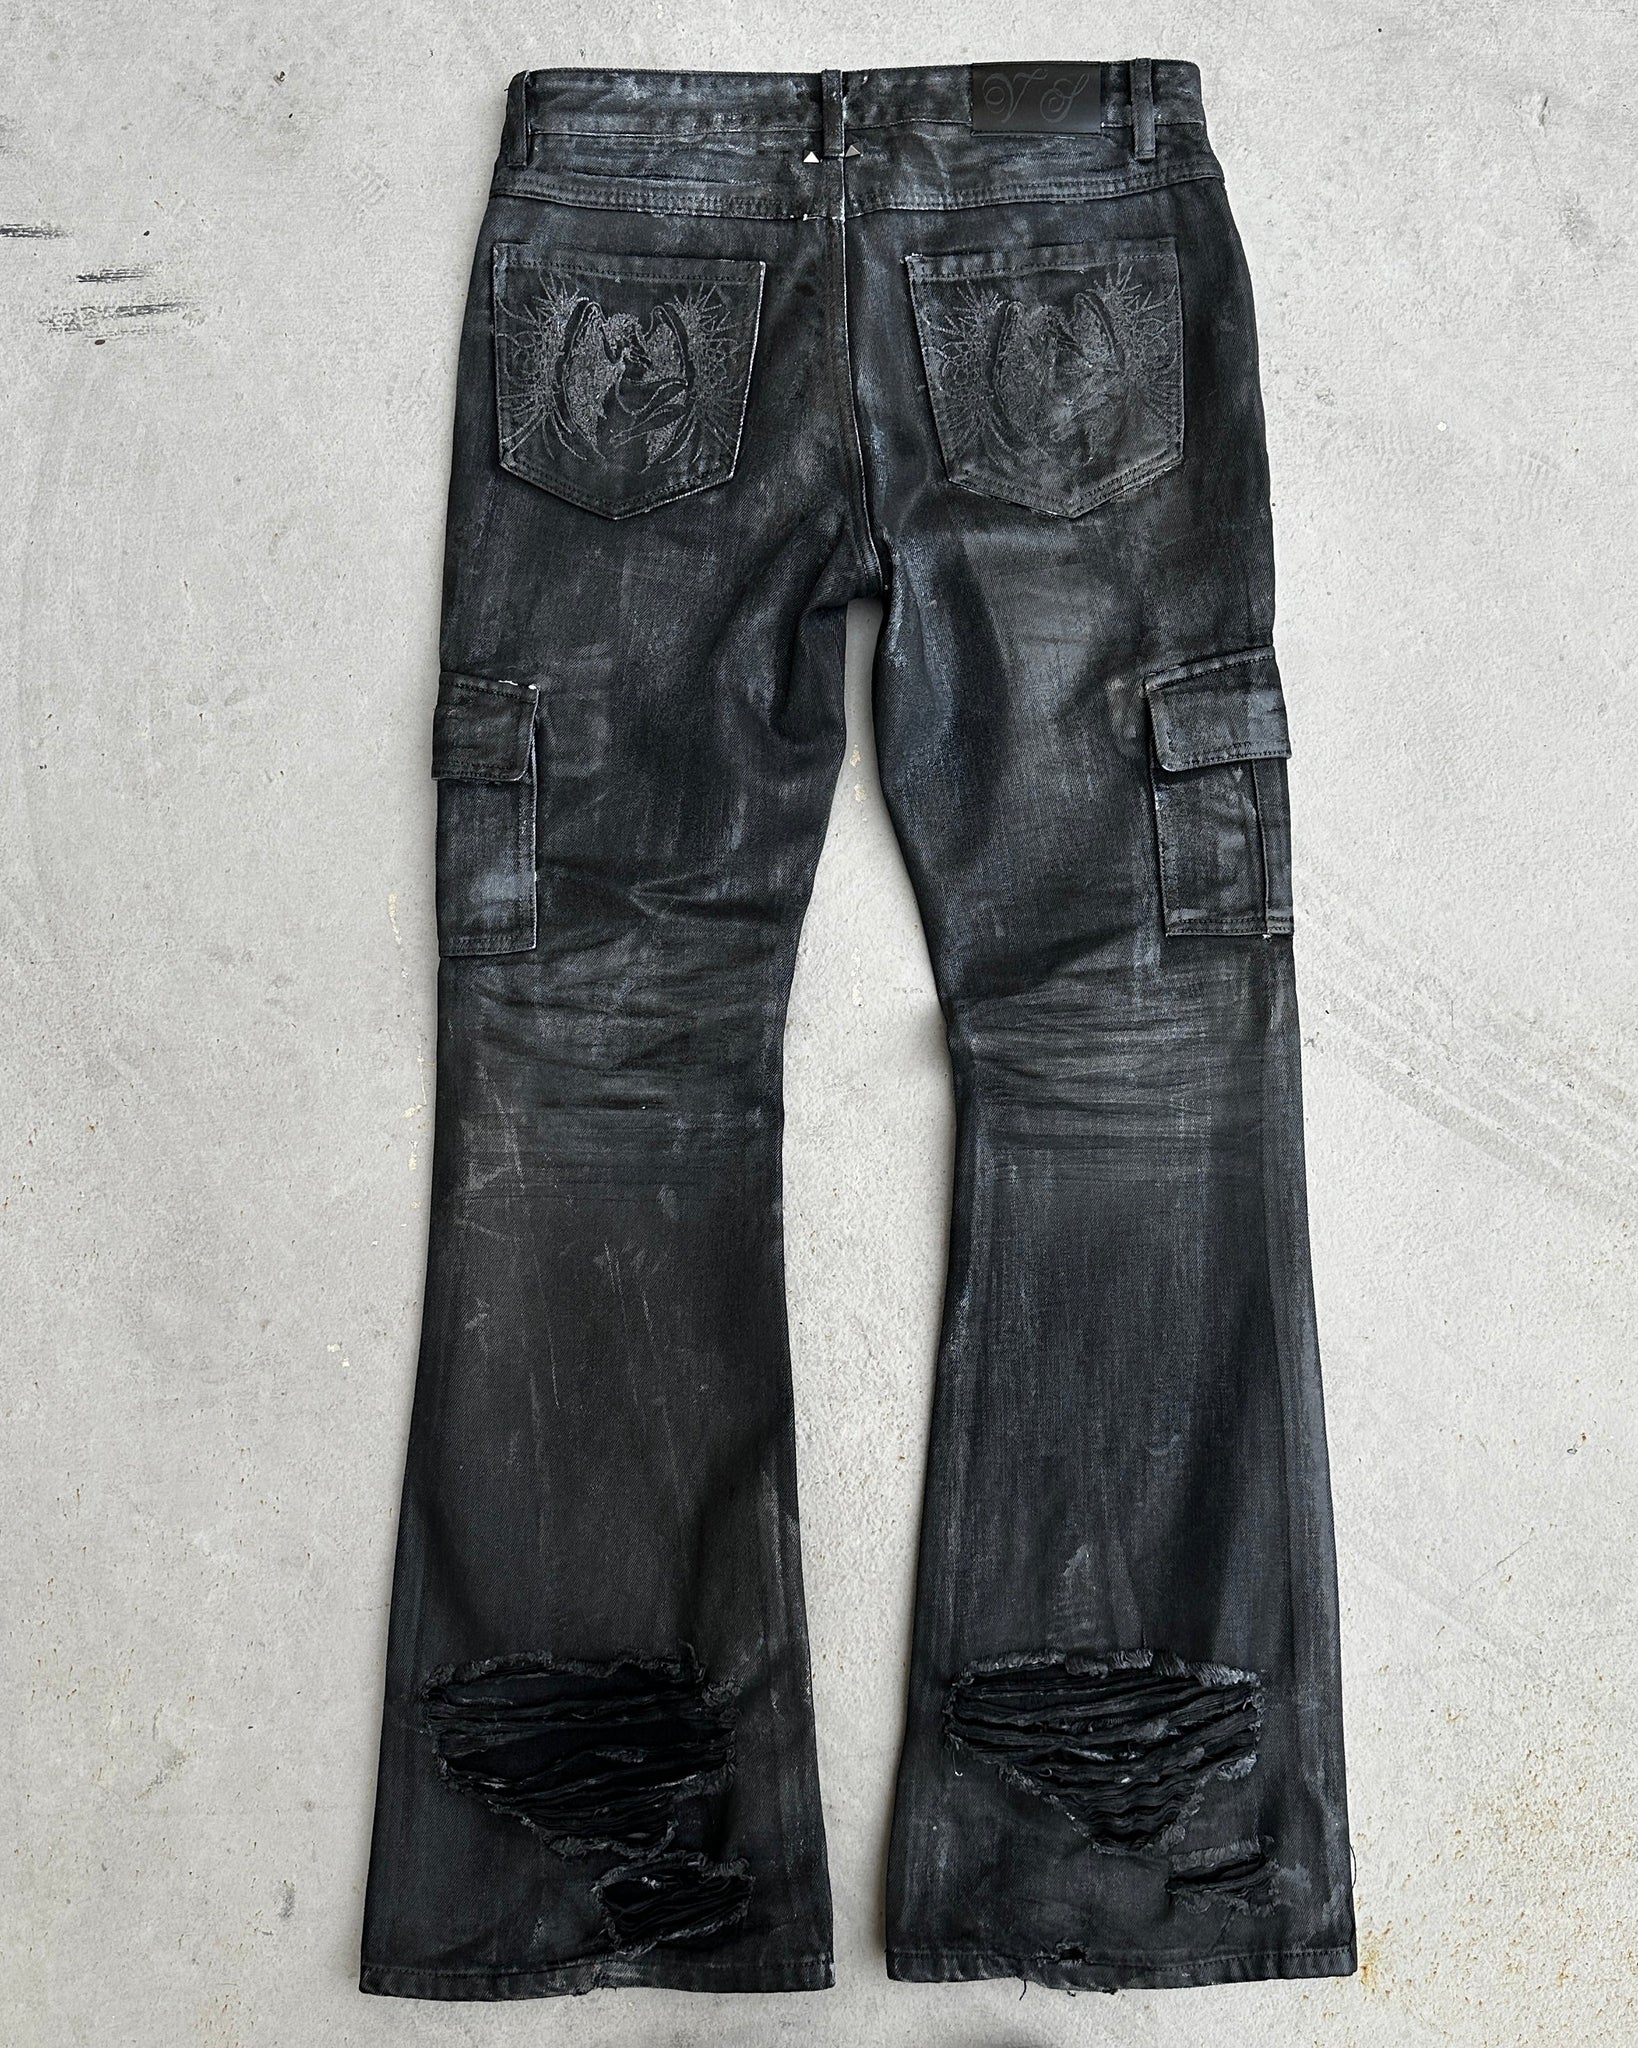 017 - "Vendetta" Waxed Denim Jeans